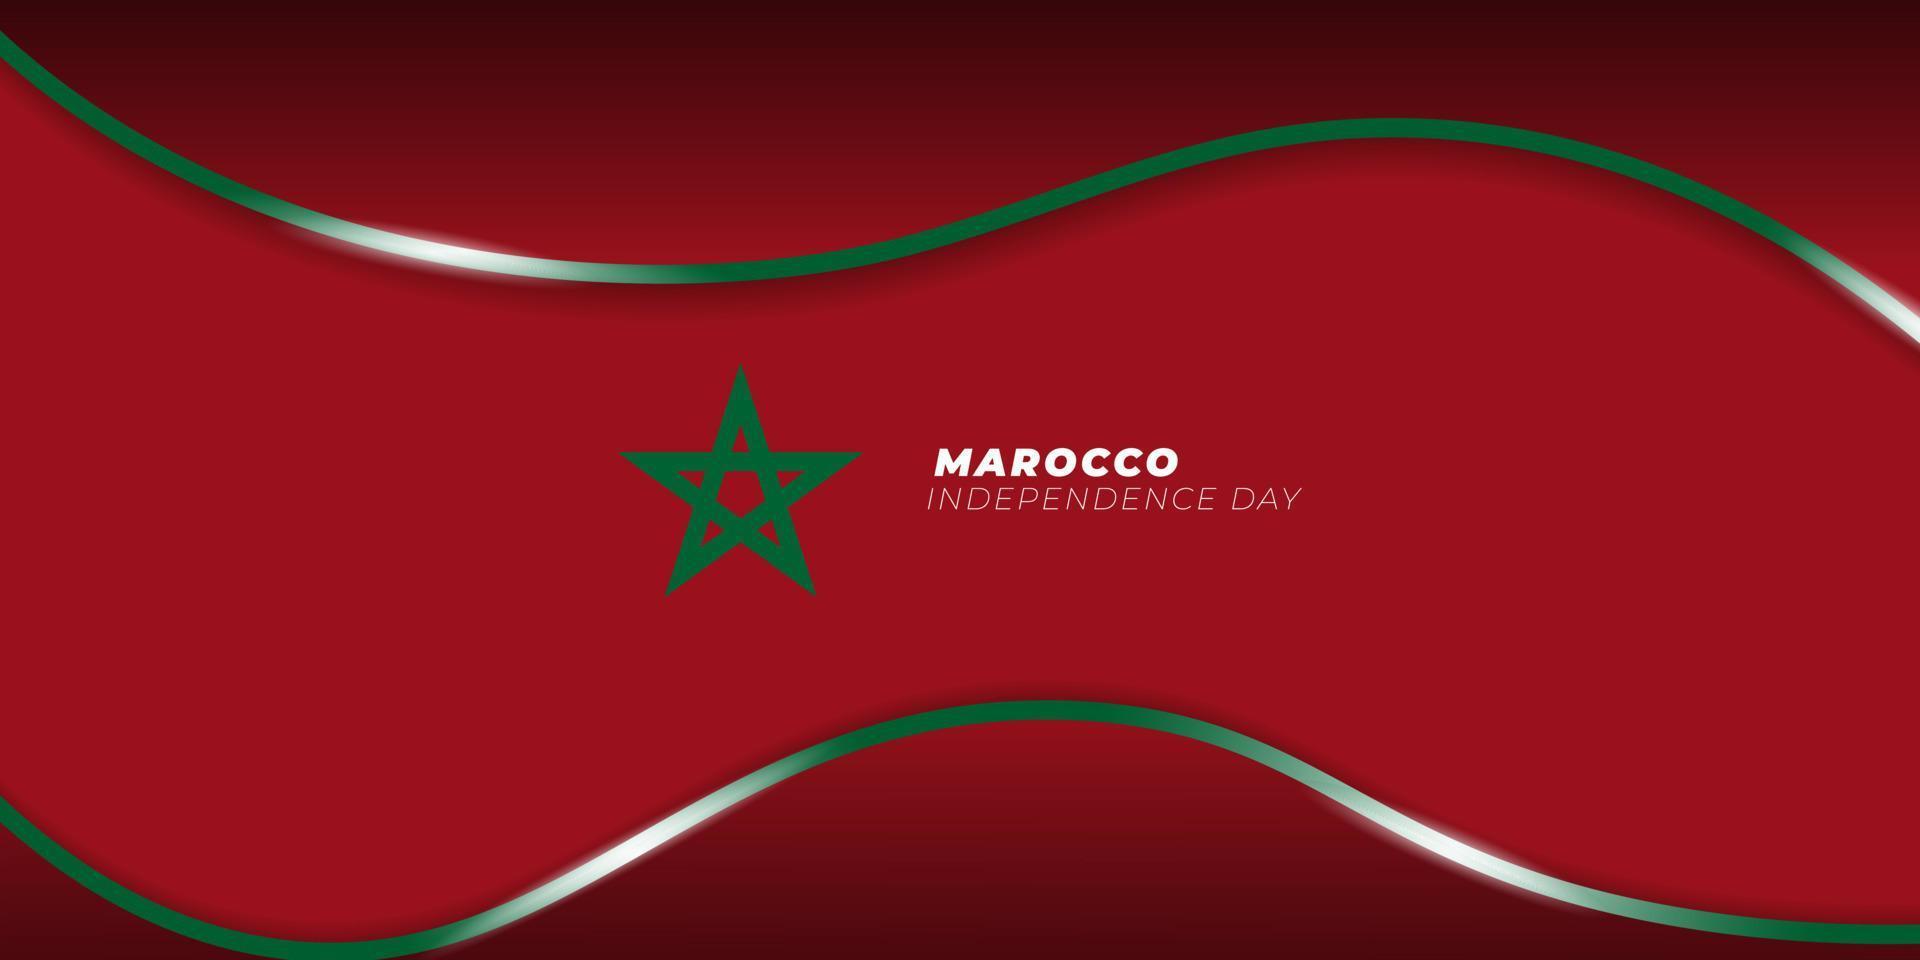 sfondo del giorno dell'indipendenza del marocco con stella verde per la bandiera del marocco. disegno di sfondo rosso e verde. vettore